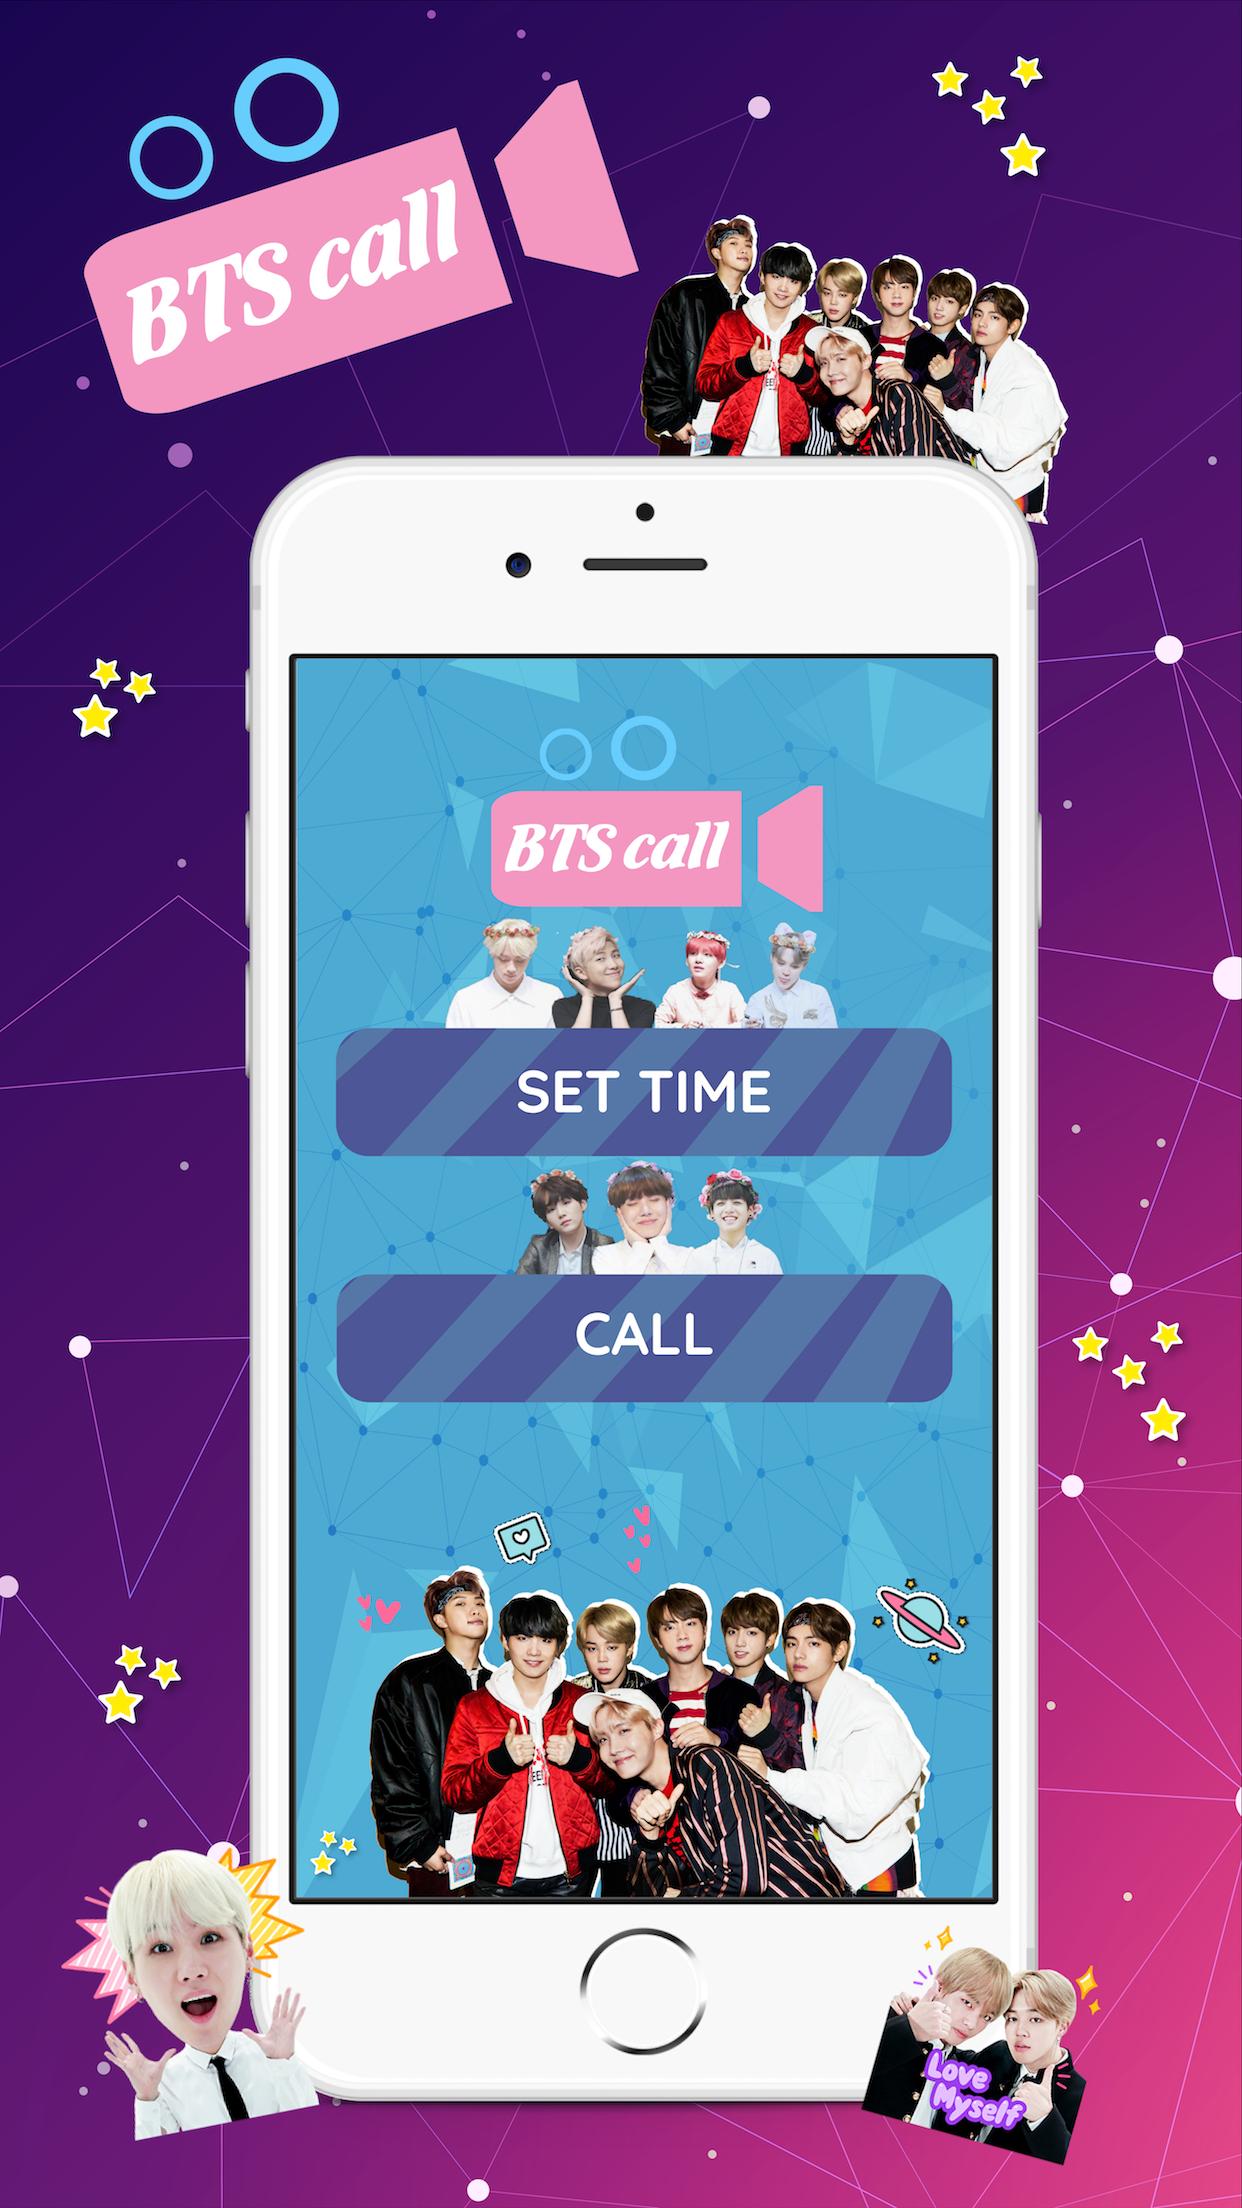 BTS темы для андроид. БТС айдол фит. BTS приложение на телефон игра. Idol BTS обложка. Bts tools